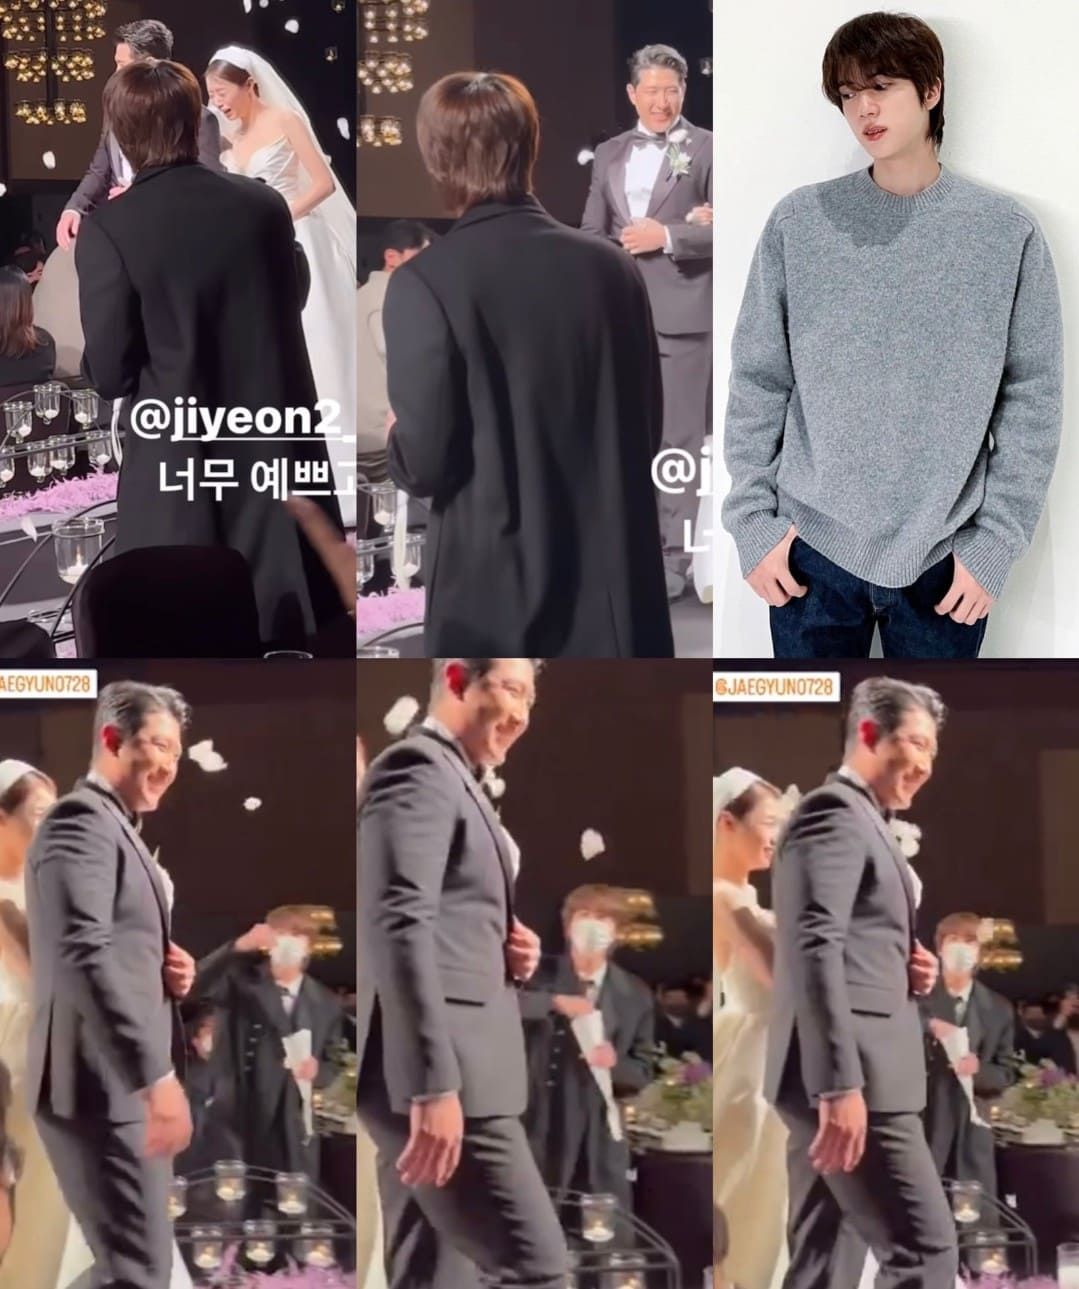 Jin BTS tampak melemparkan bunga ke arah pengantin yang berjalan menuju altar pernikahan.